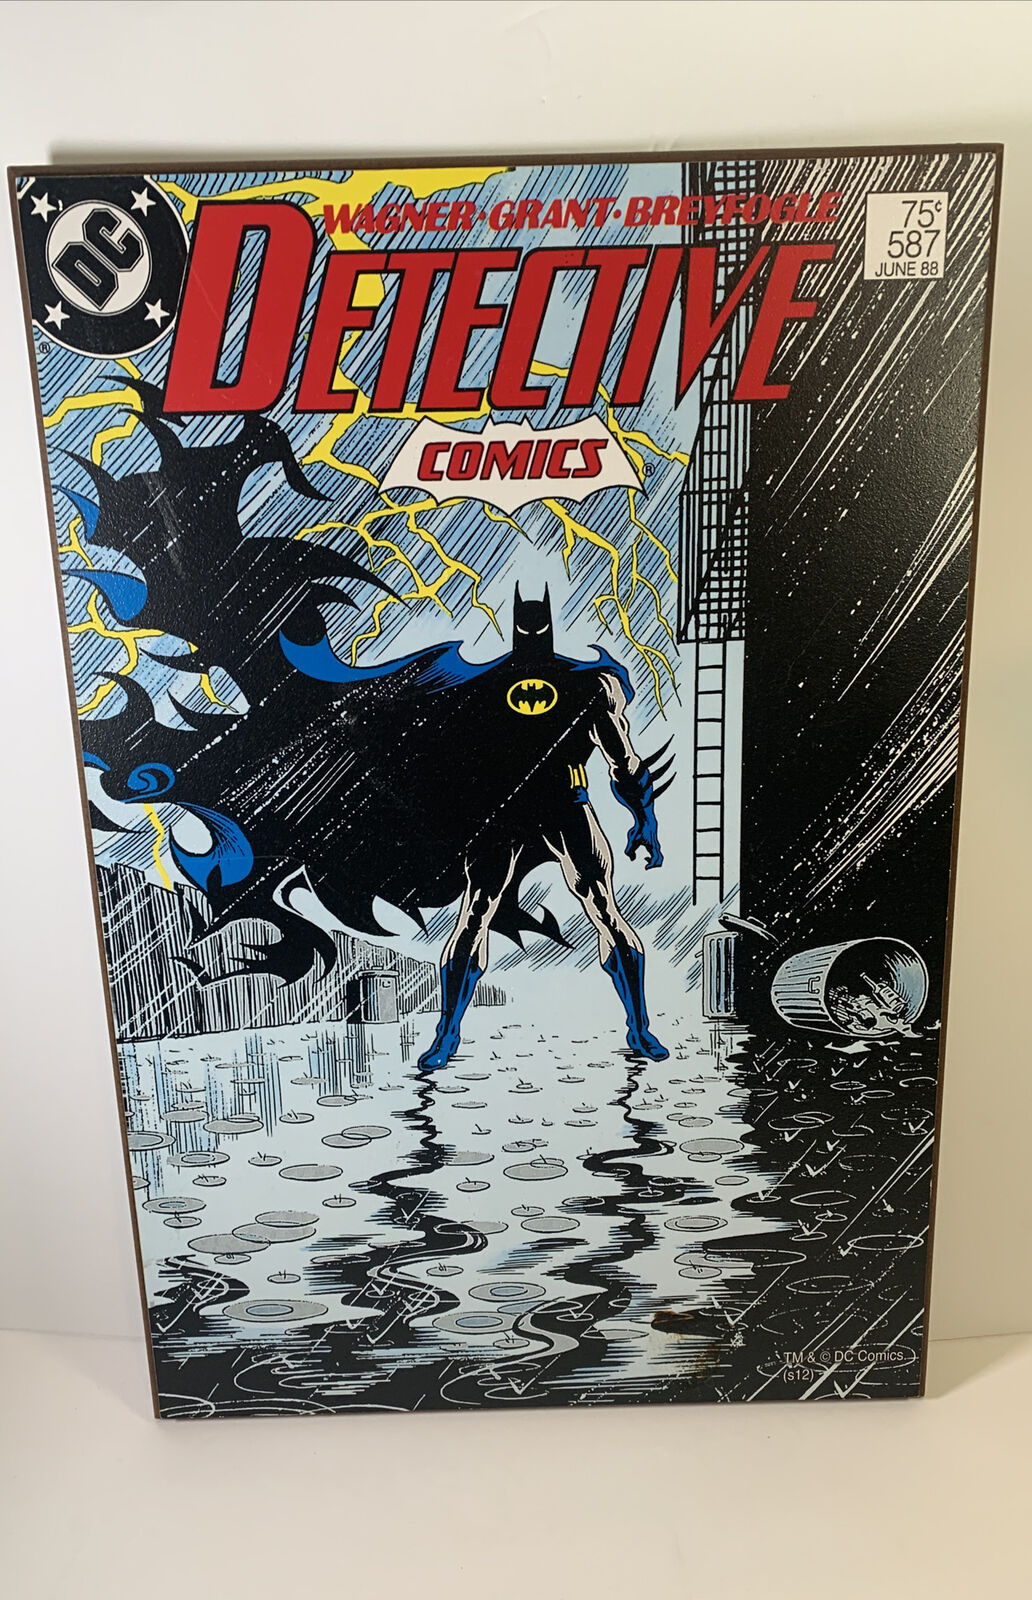 DETECTIVE COMICS #587 Batman Comic Book Cover Art Decorative Wooden Wall Plaque